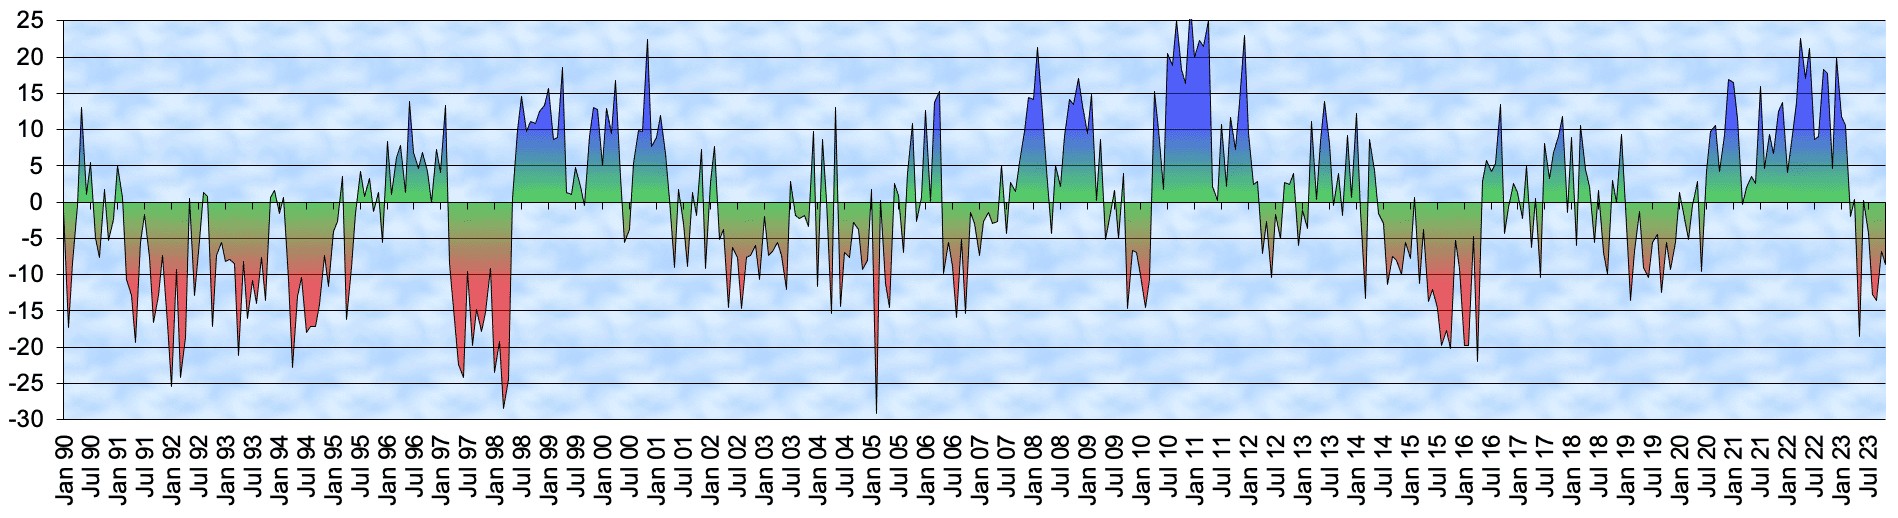 Southern Oscillation Index (SOI) von Januar 1990 bis Dezember 2020